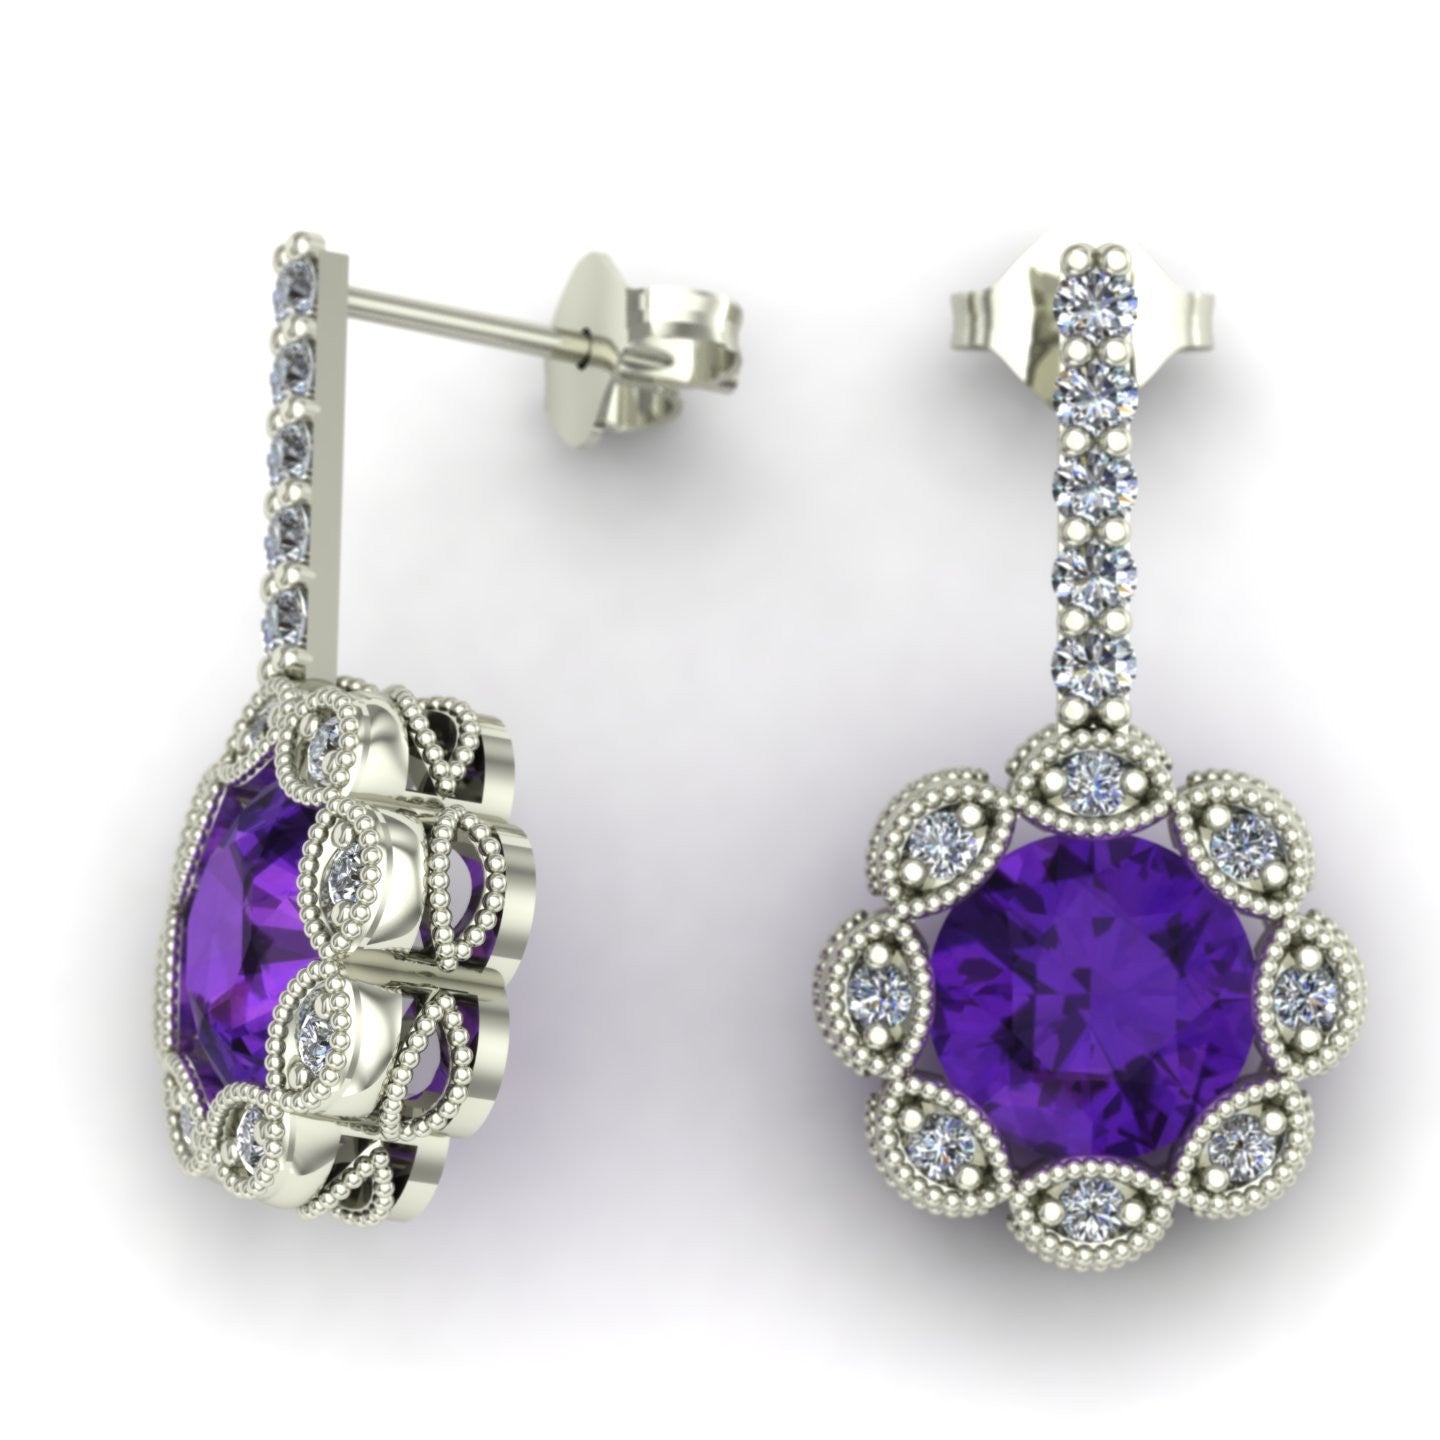 Amethyst and diamond flower earrings in 14k white gold - Charles Babb Designs - 2